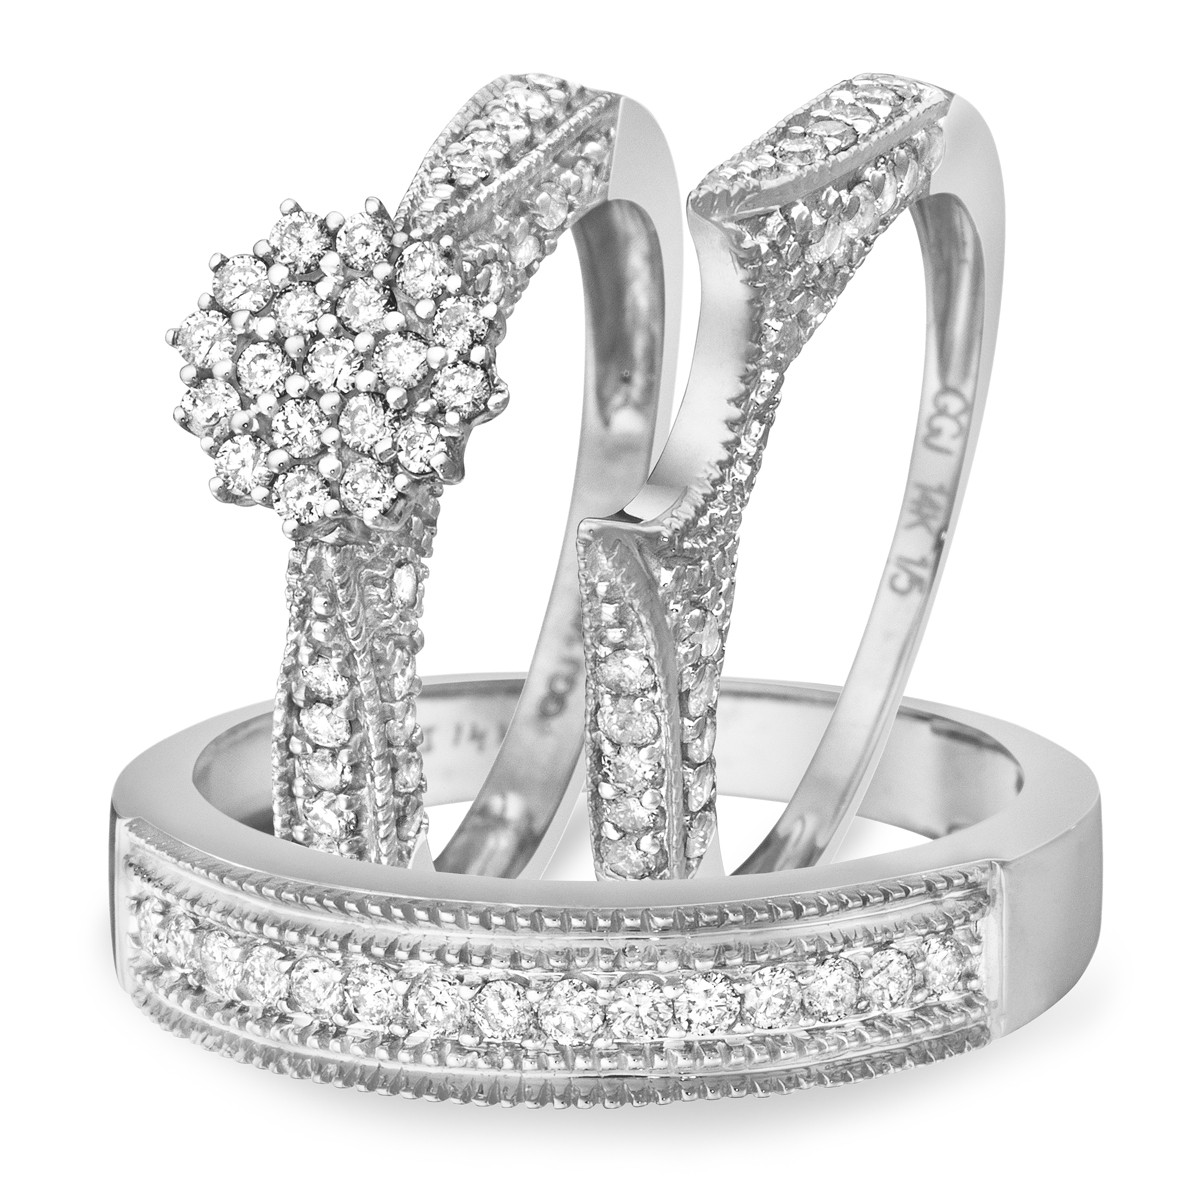 Wedding Ring Sets White Gold
 1 Carat Diamond Trio Wedding Ring Set 14K White Gold